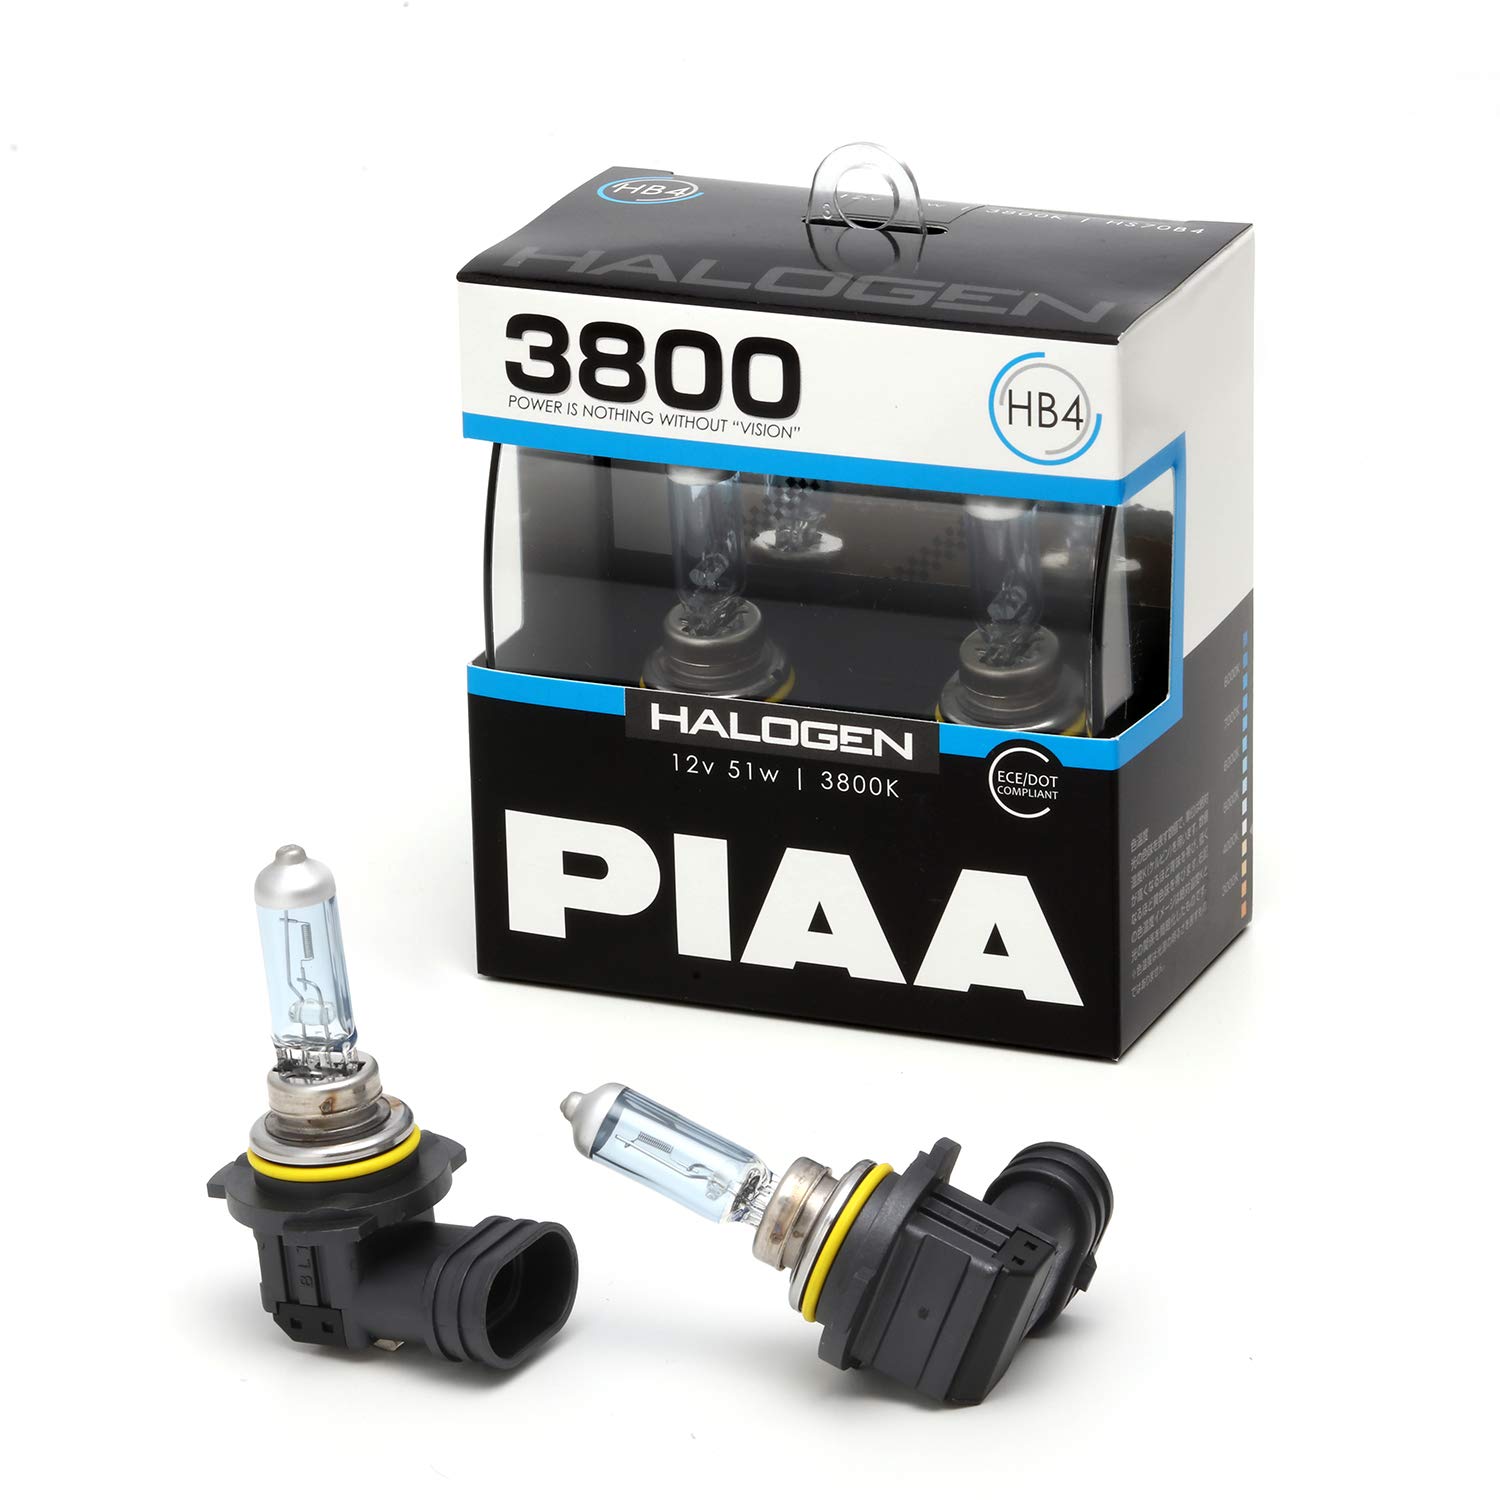 PIAA(ピア) ヘッドライト・フォグランプ用 ハロゲン HB4 3800K 車検対応 2個入 12V 51W ECE規格準拠 HS70B4